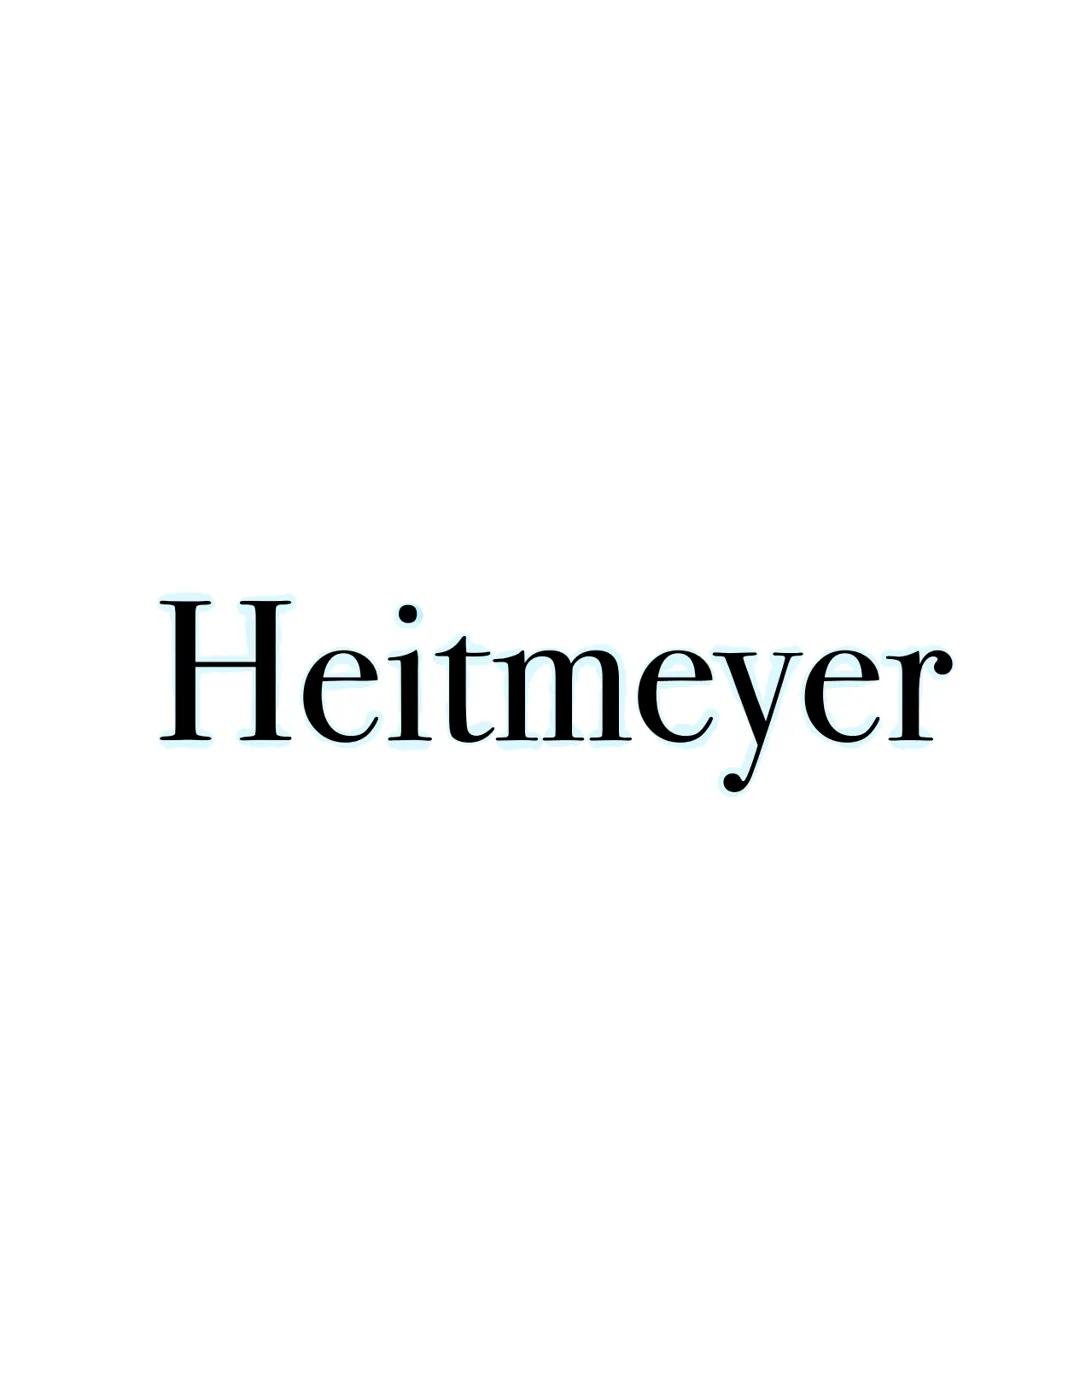 Heitmeyer Grundannahmen
Heitmeyer geht davon aus, dass das zentrale Problem der heutigen Gesellschaft, die Individualisierung ist.
Individua